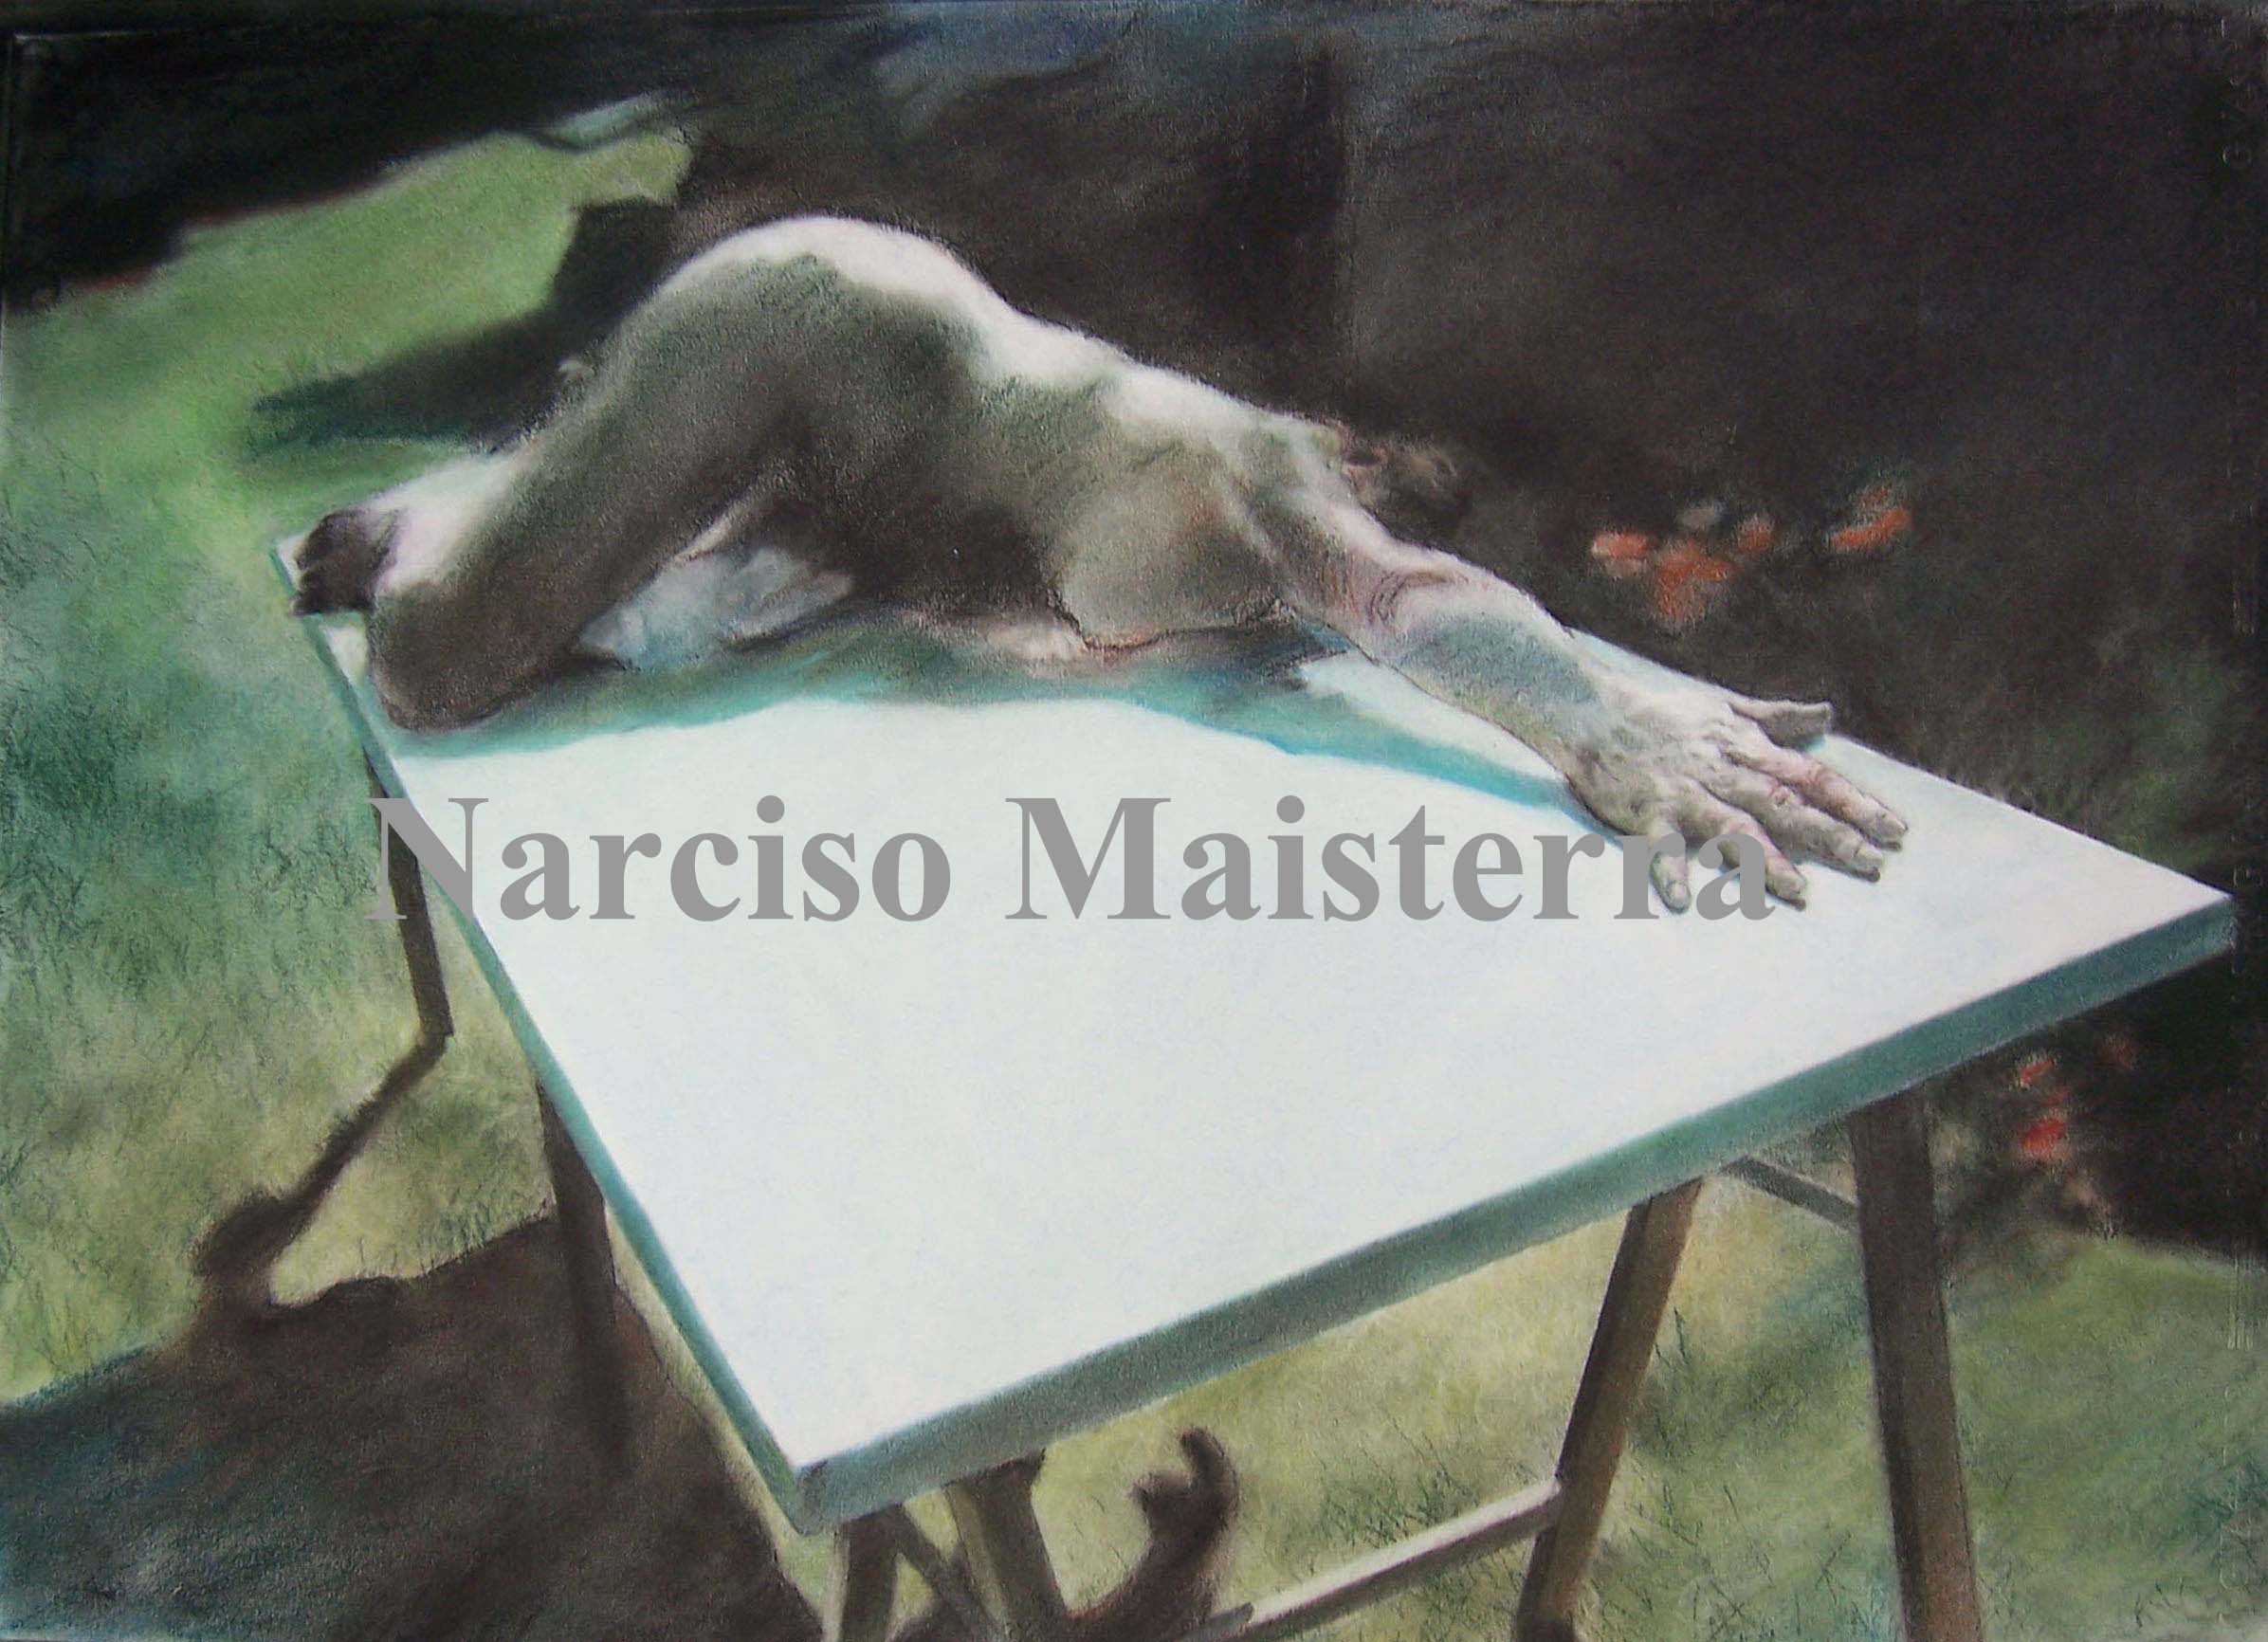 Narciso Maisterra, expone su Obra Pictórica, en la Galería Hillyert Art Space en Washington DC, USA.